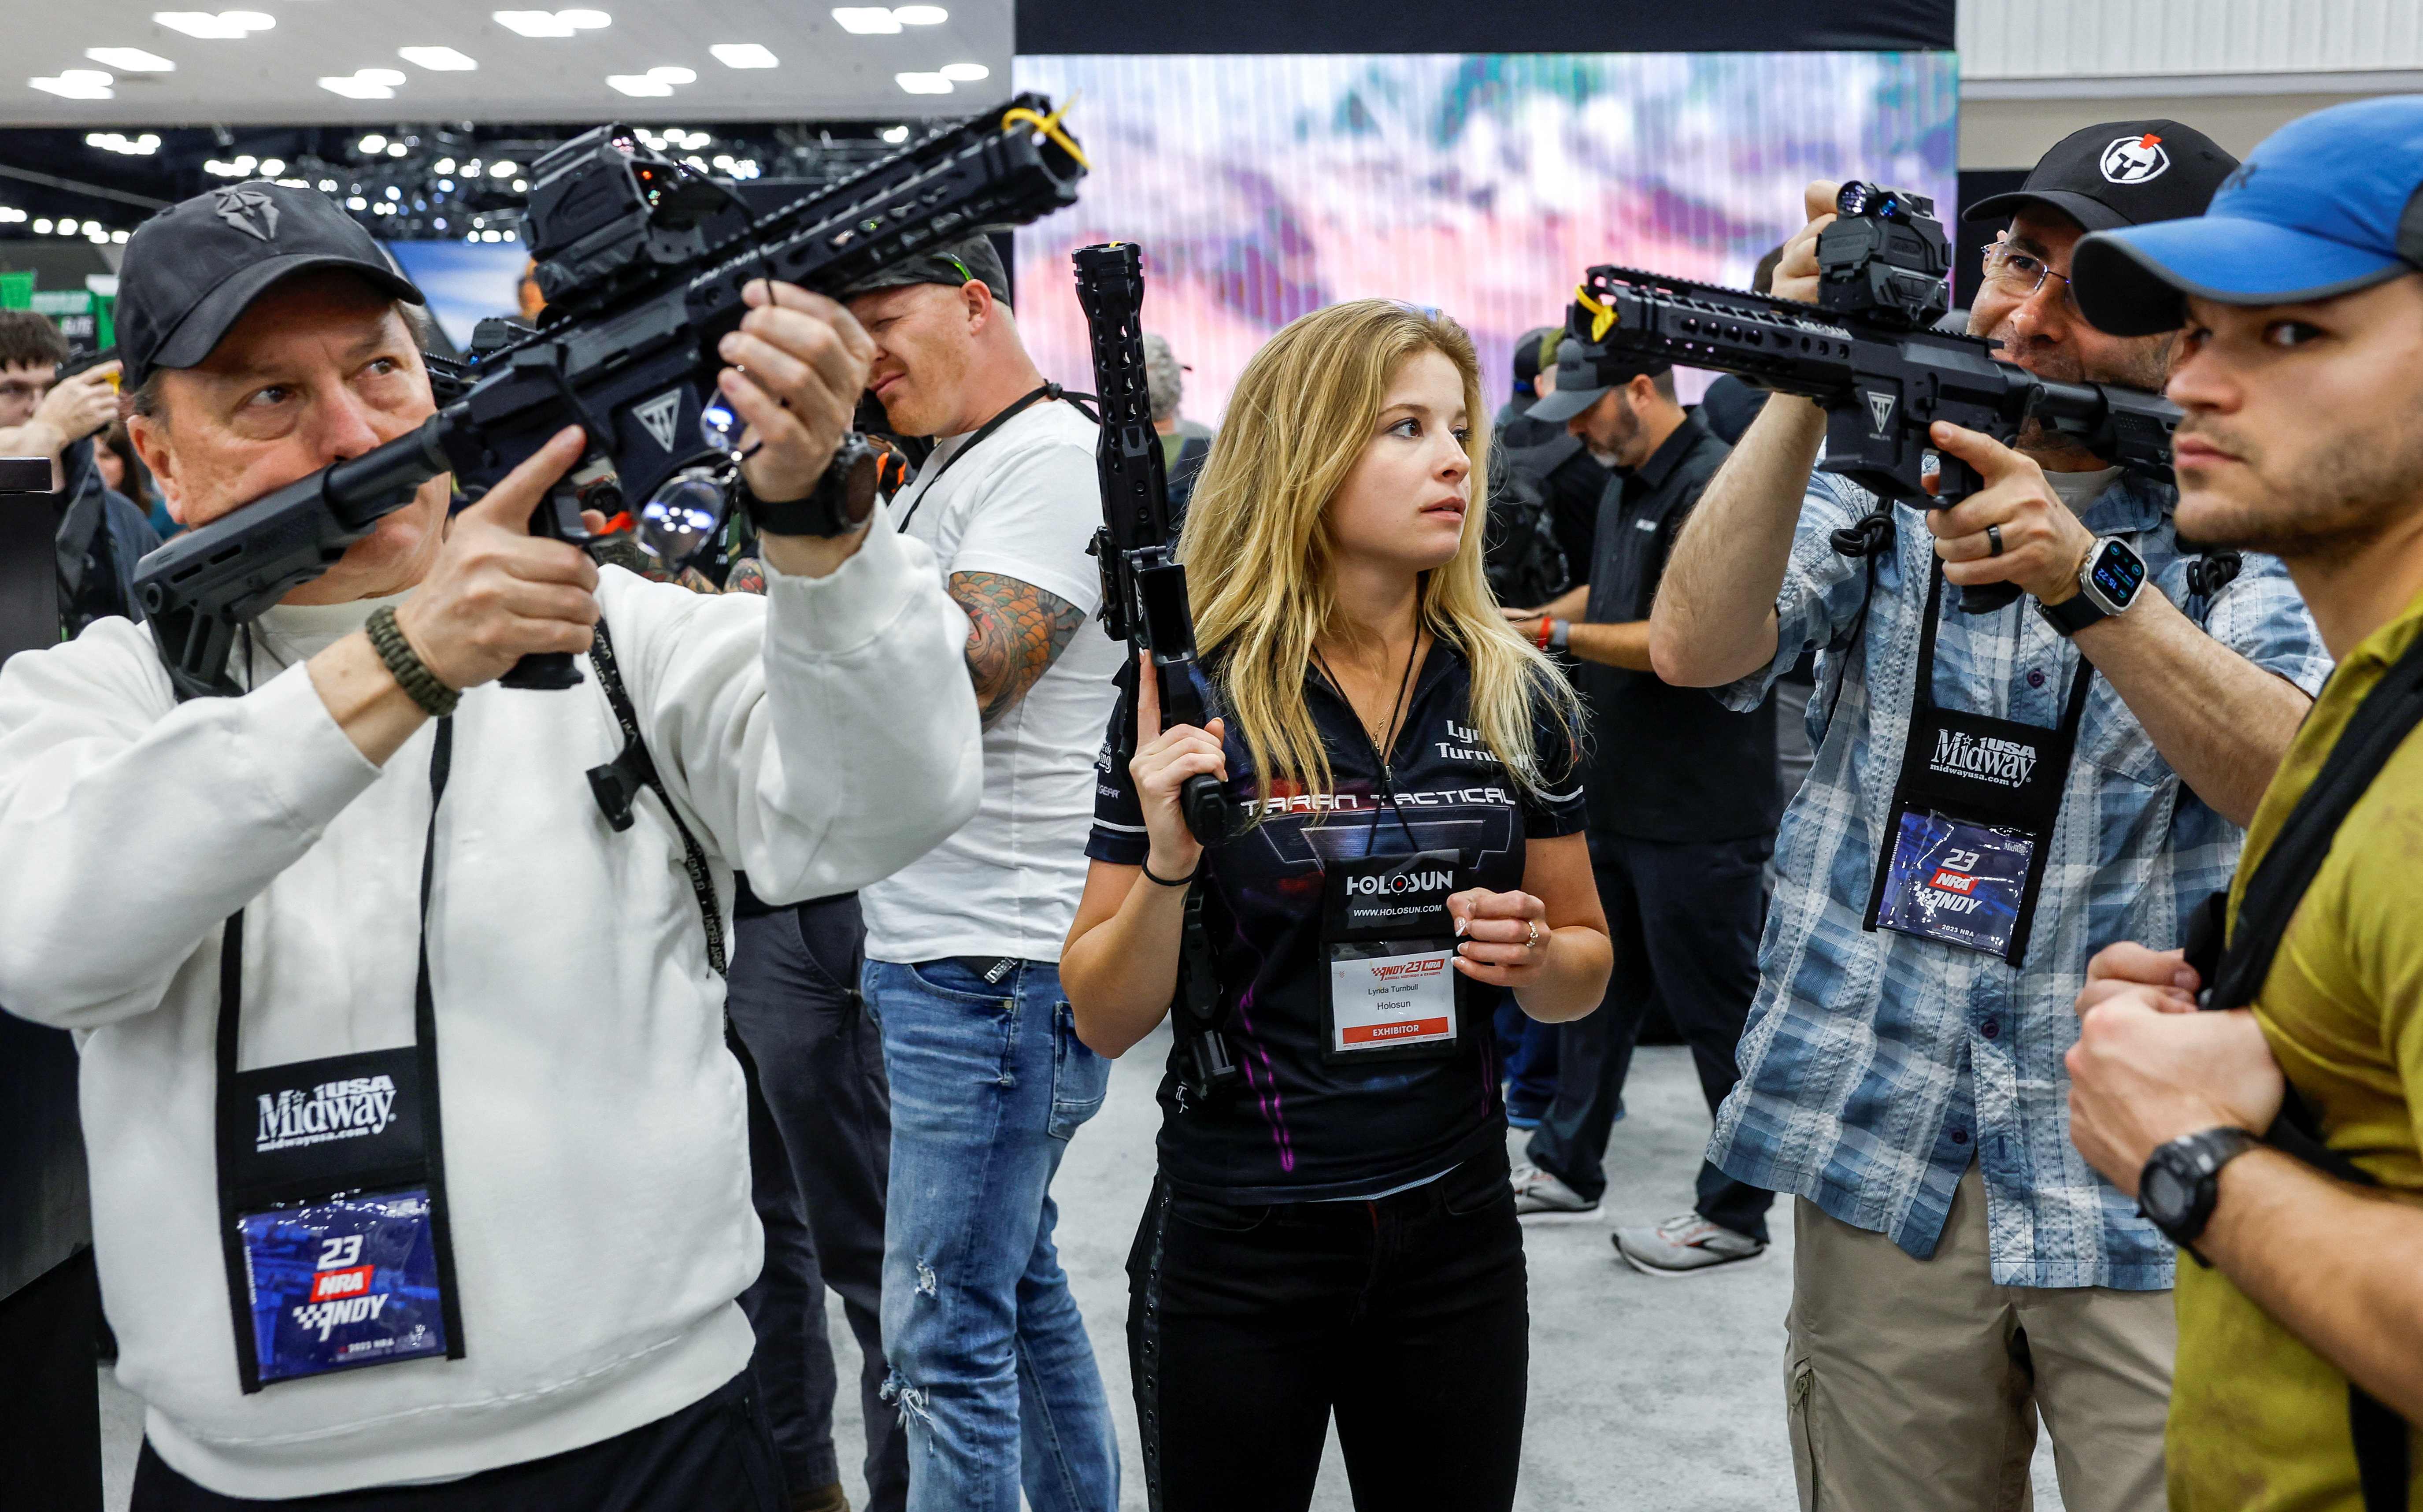 15일 미국 인디애나주 인디애나폴리스에서 열린 전미소총협회(NRA) 연례 행사에서 참석자들이 홀로선 부스에서 레이저 조준경을 시험해보고 있다. 로이터 연합뉴스